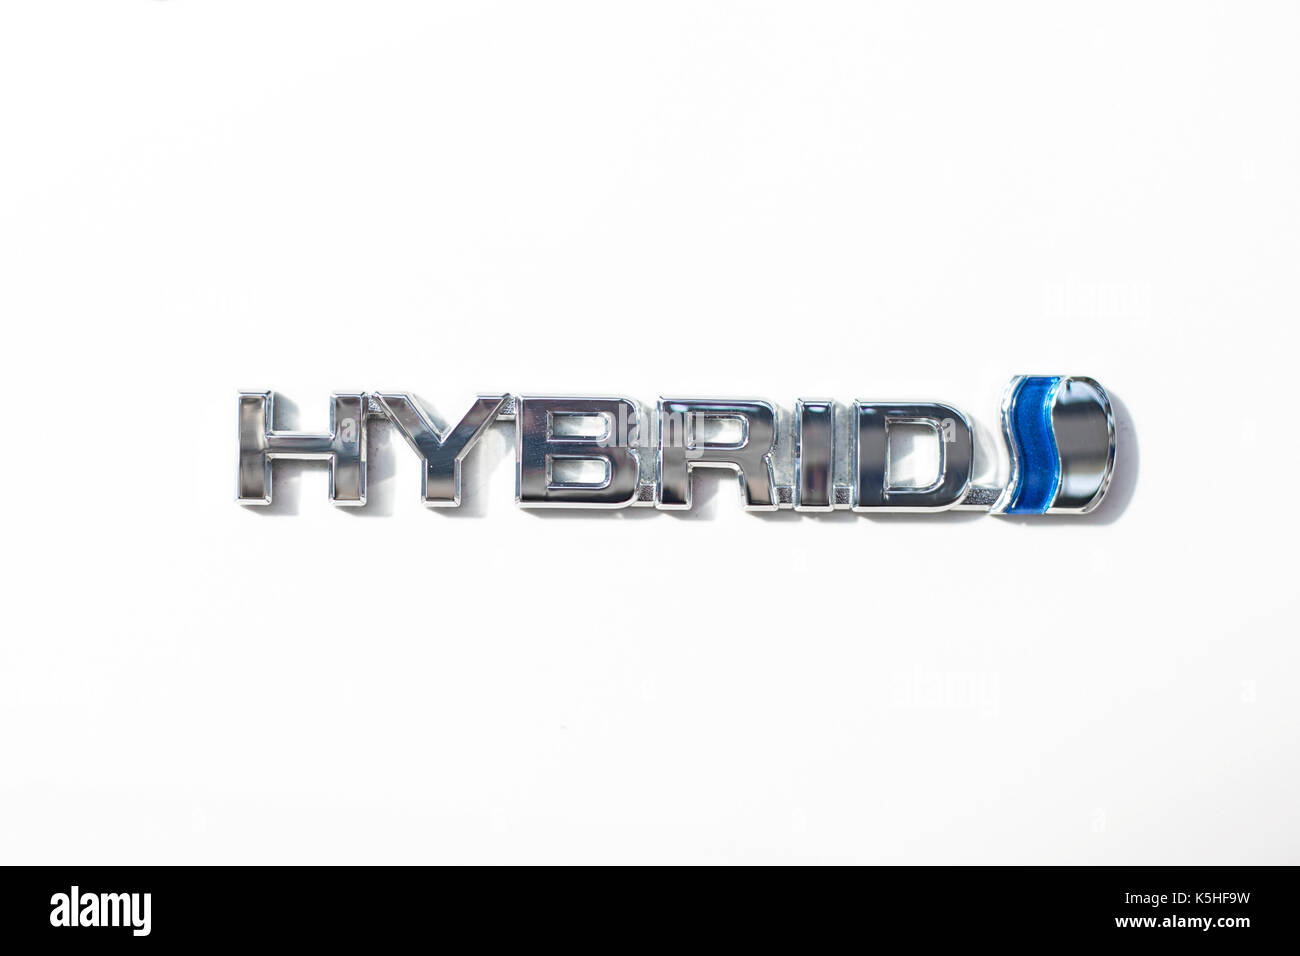 Belgrado, Serbia - marzo 28, 2017: dettaglio della Toyota Prius ibrida auto a Belgrado in Serbia. Toyota Prius è un full hybrid automobile elettrica manufactur Foto Stock